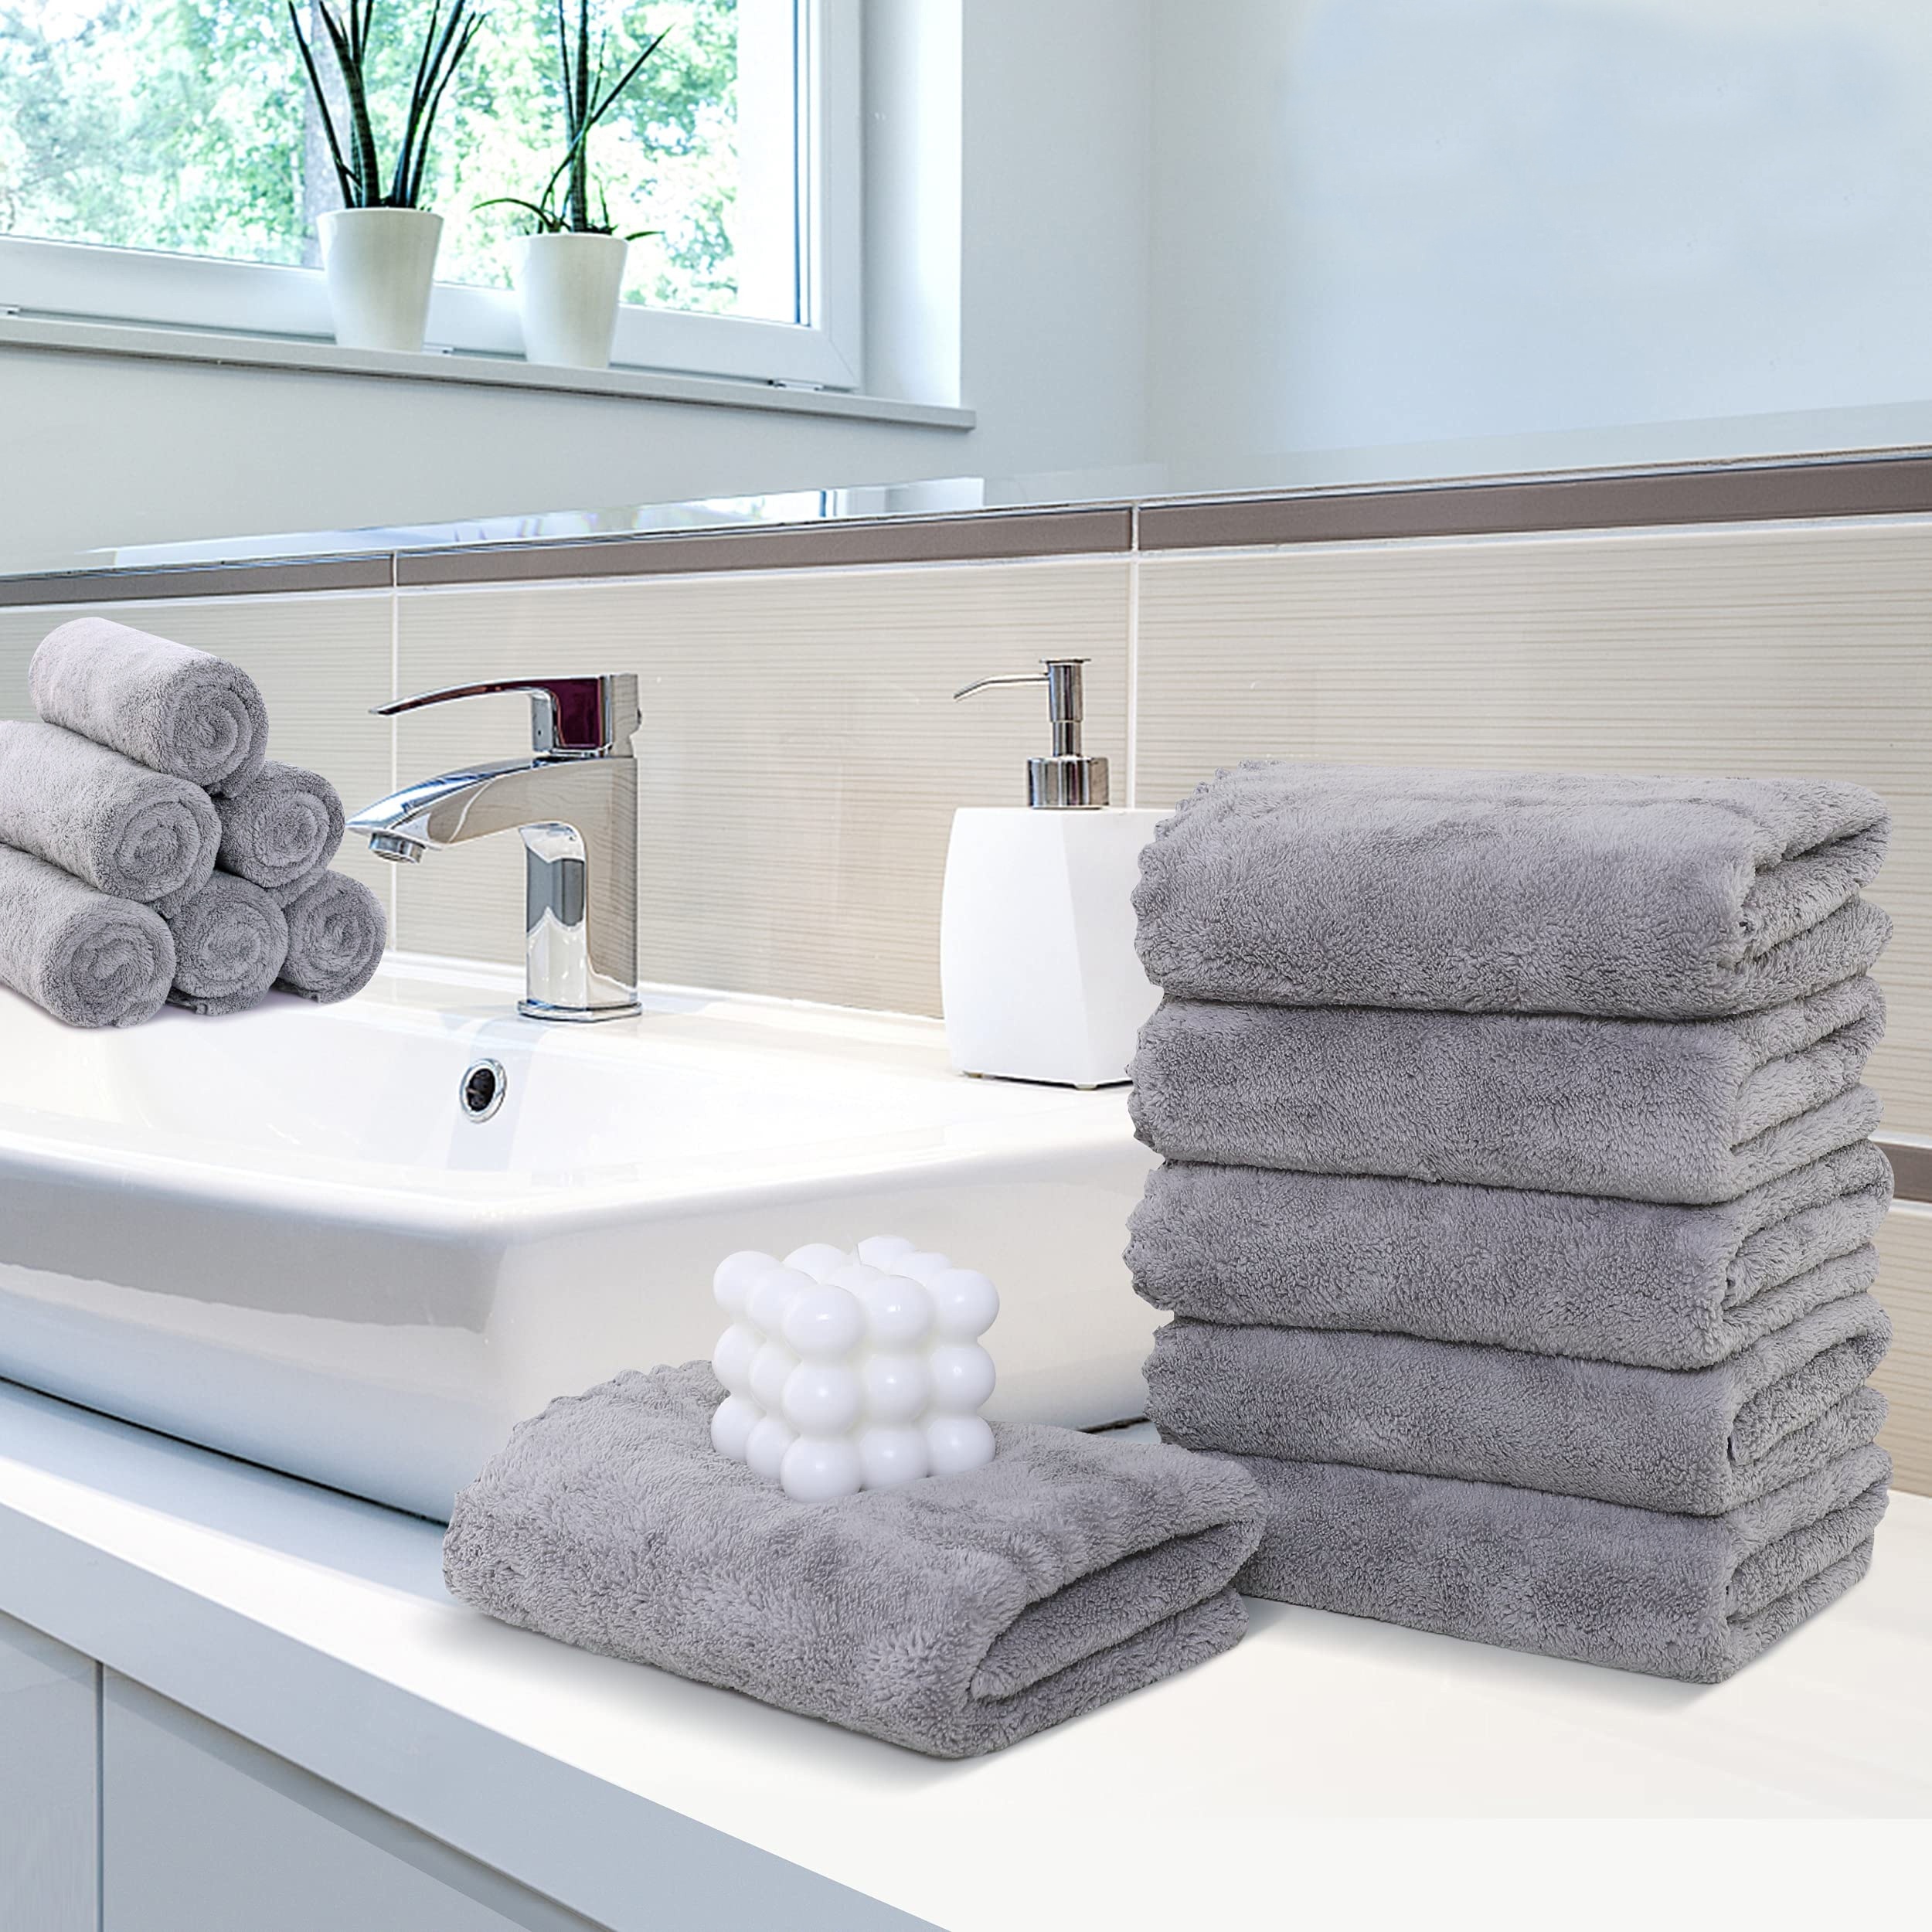  MOONQUEEN - Juego de toallas ultra suaves y de secado rápido, 2  toallas de baño, 2 toallas de mano, 2 toallas pequeñas, microfibra coral  altamente absorbente, para baño, yoga, etc (gris